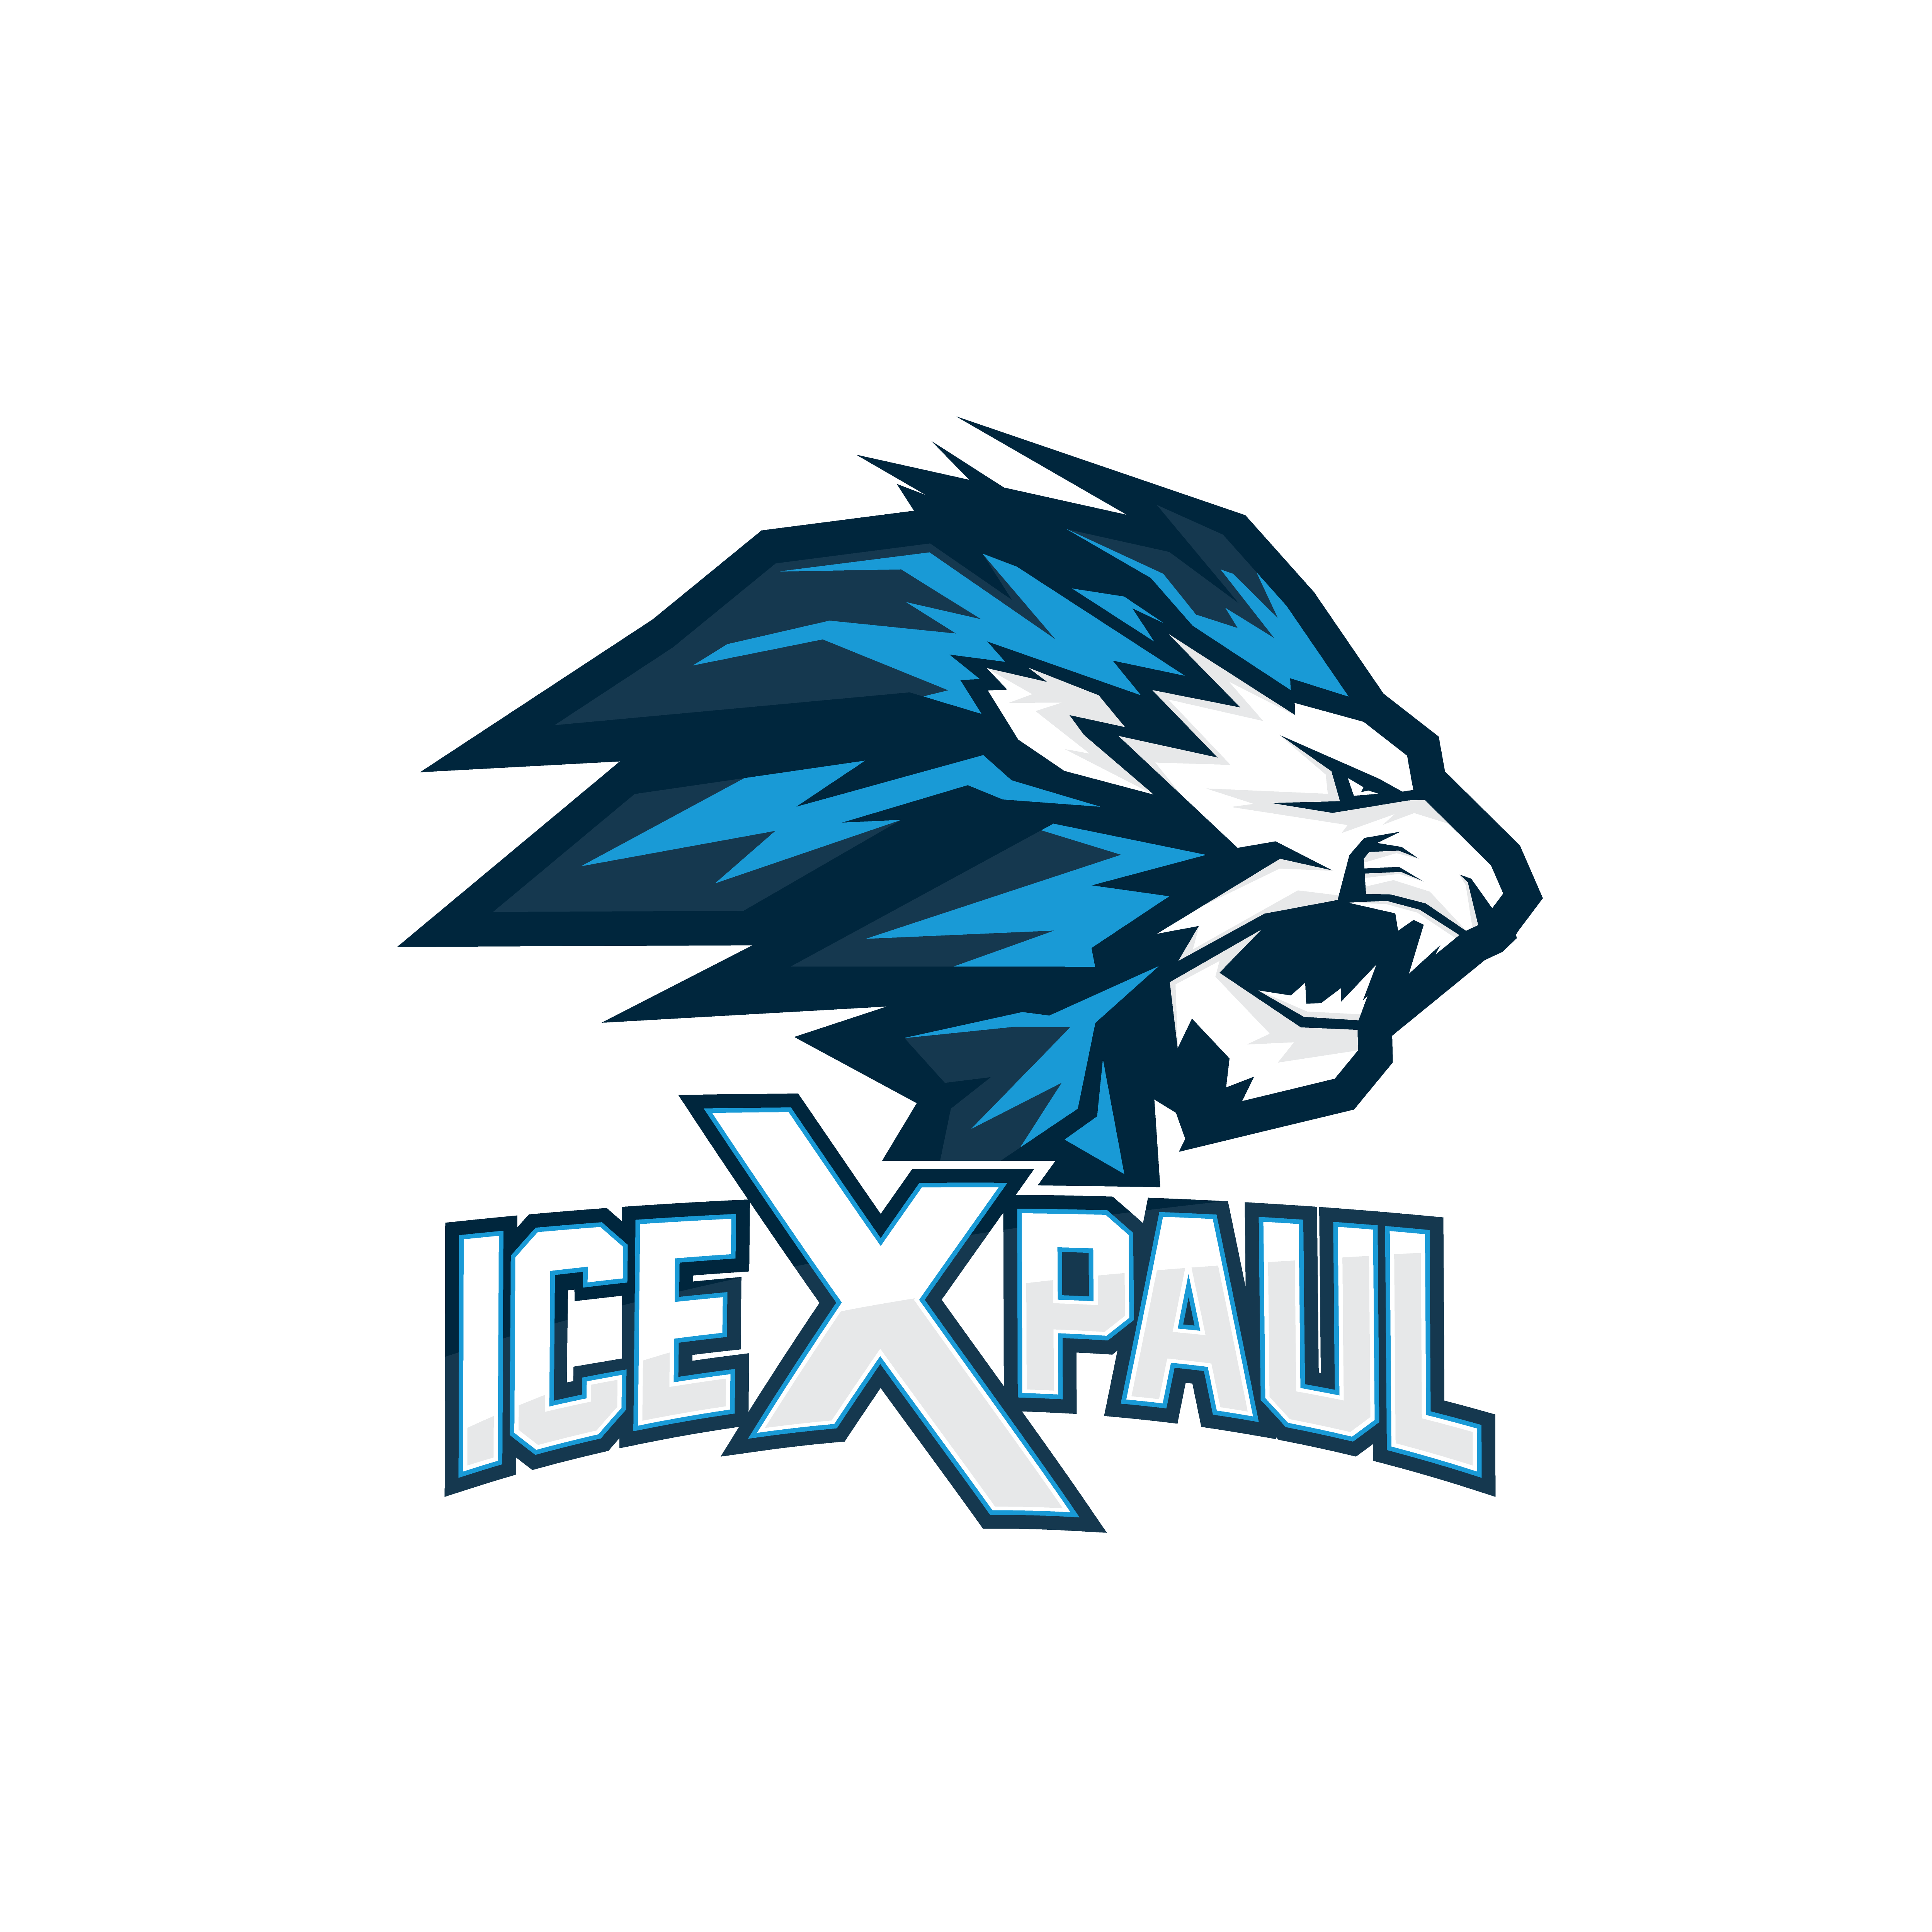 iceXpaul